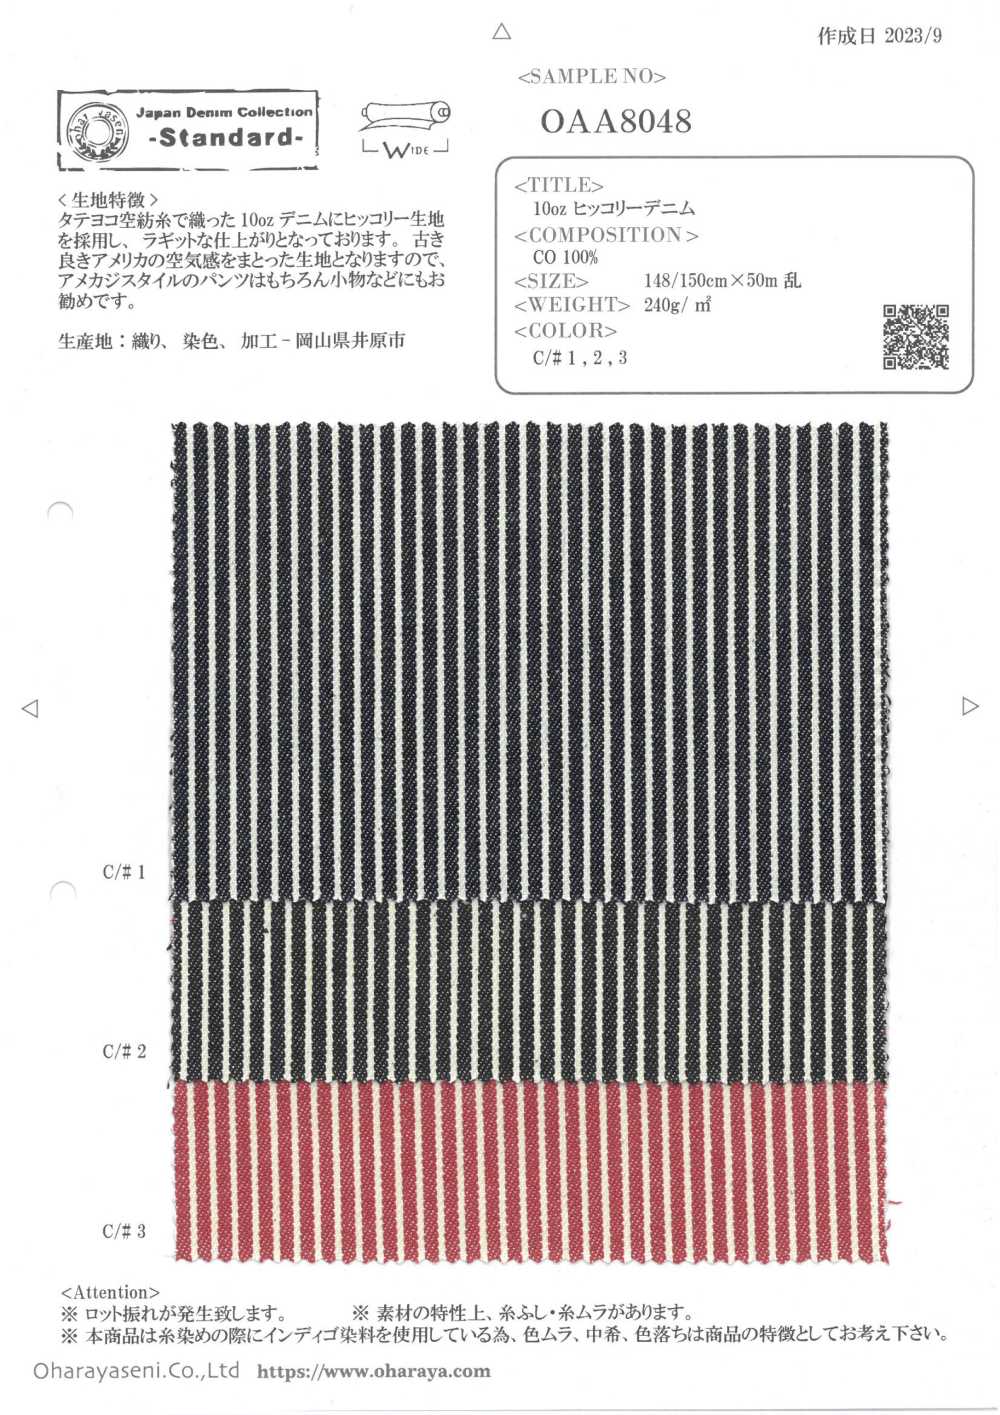 OAA8048 Mezclilla De Nogal De 10 Oz[Fabrica Textil] Oharayaseni